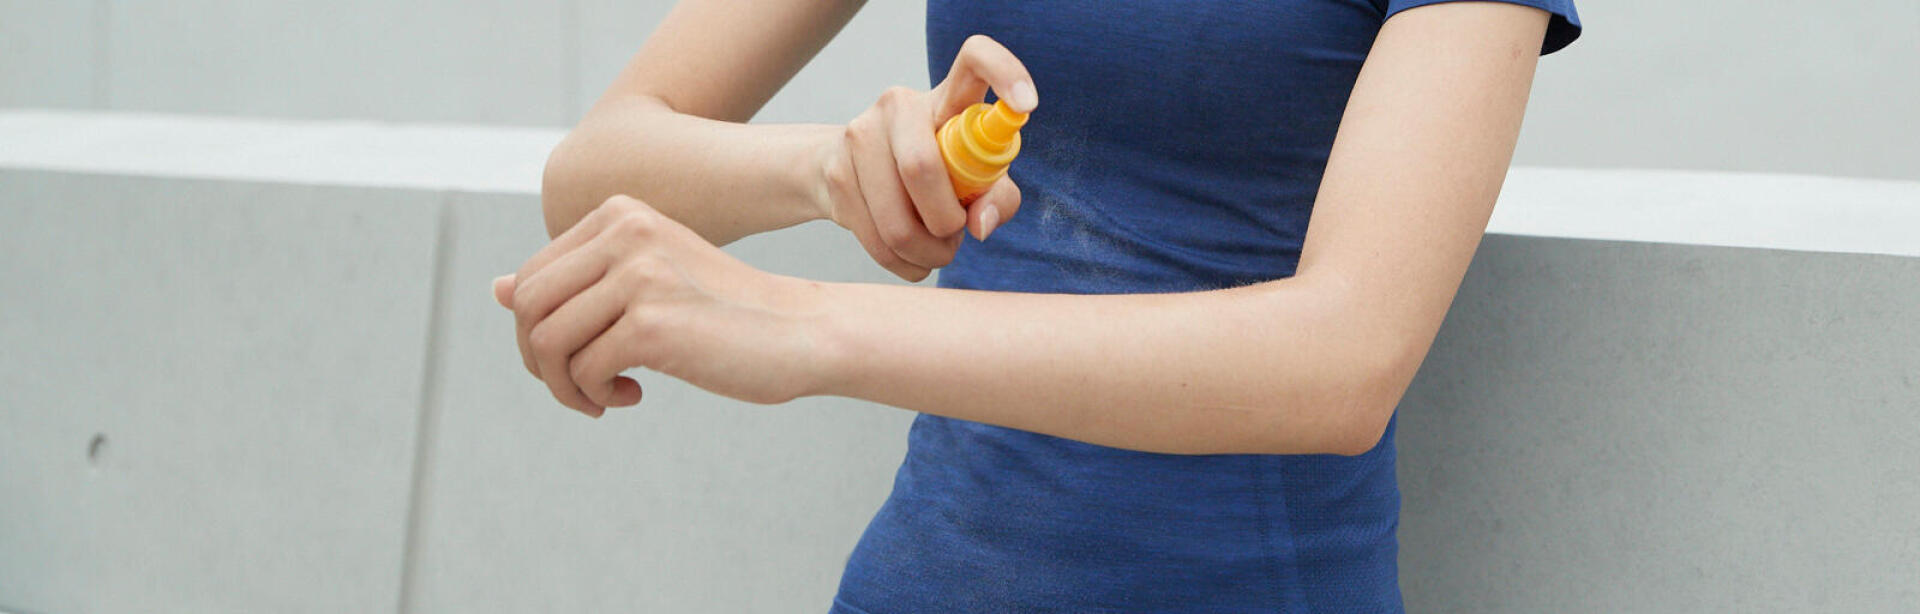 Une femme qui applique de la crème solaire sur son bras